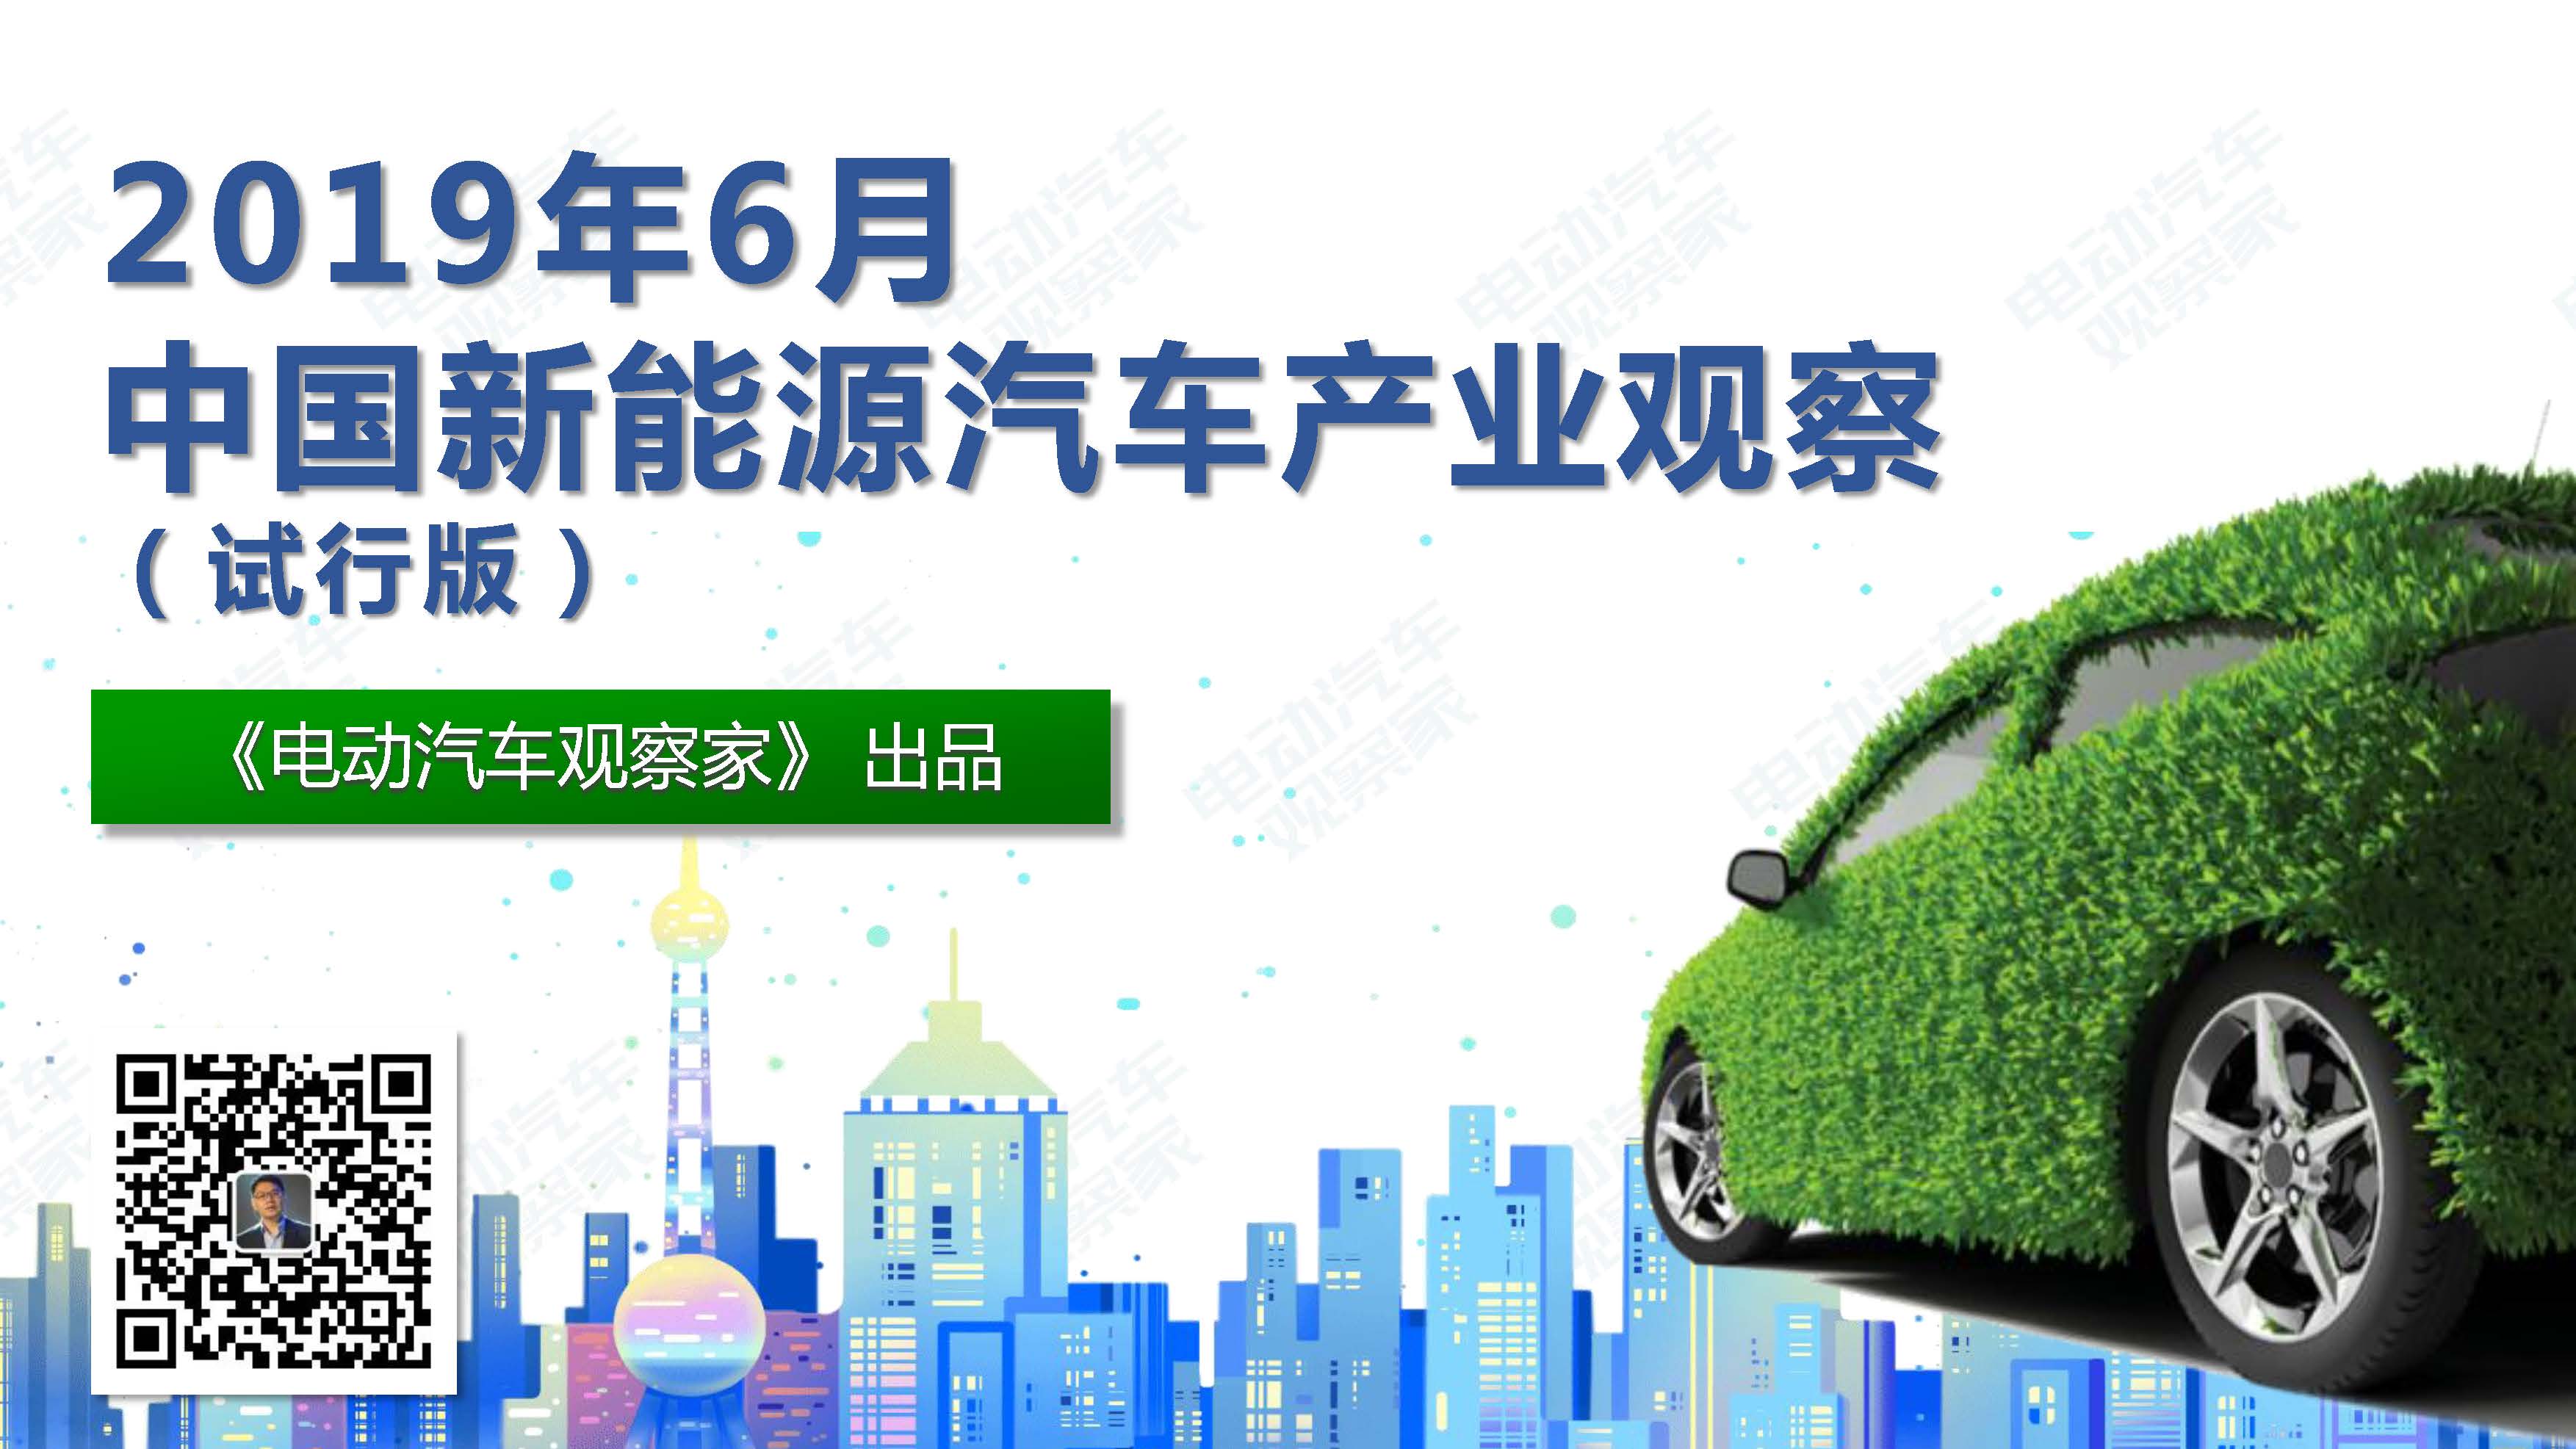 中国新能源汽车产业观察201906-3_页面_001